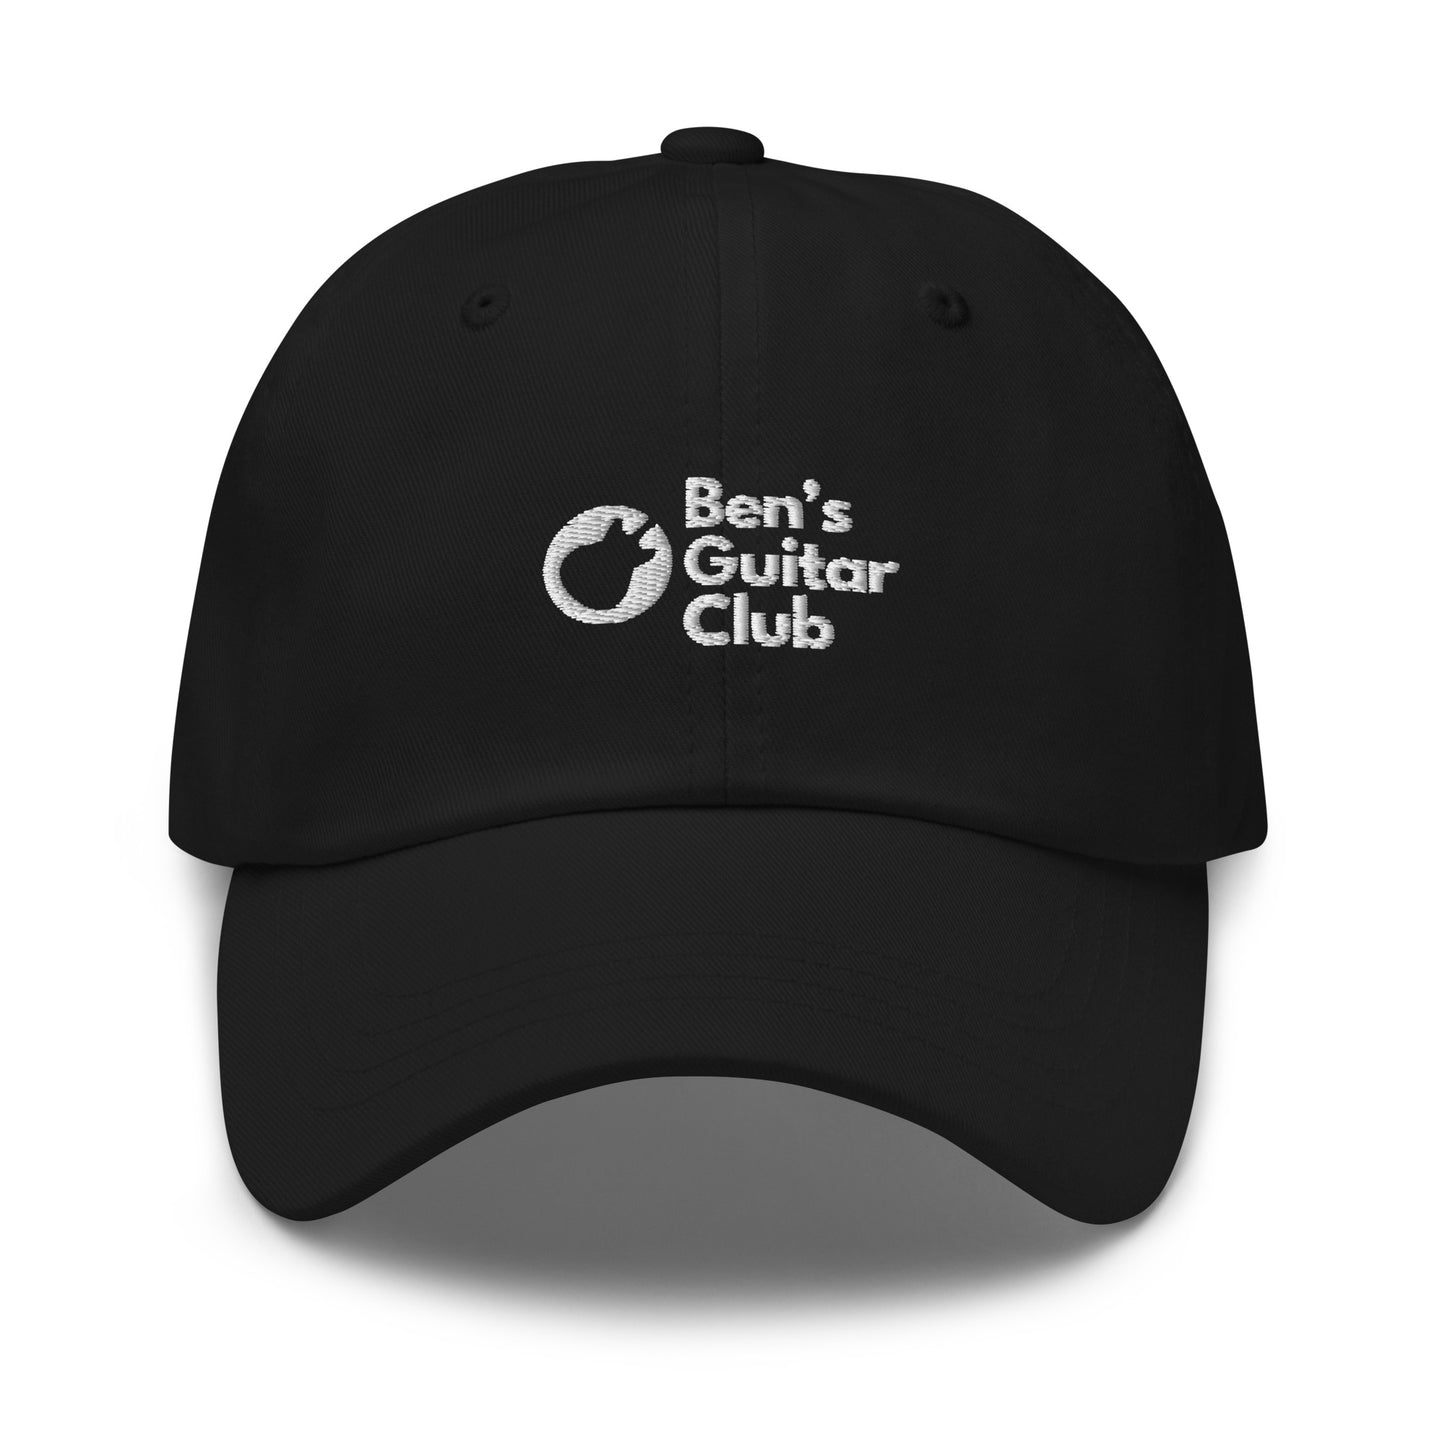 Ben's Guitar Club Dad Hat